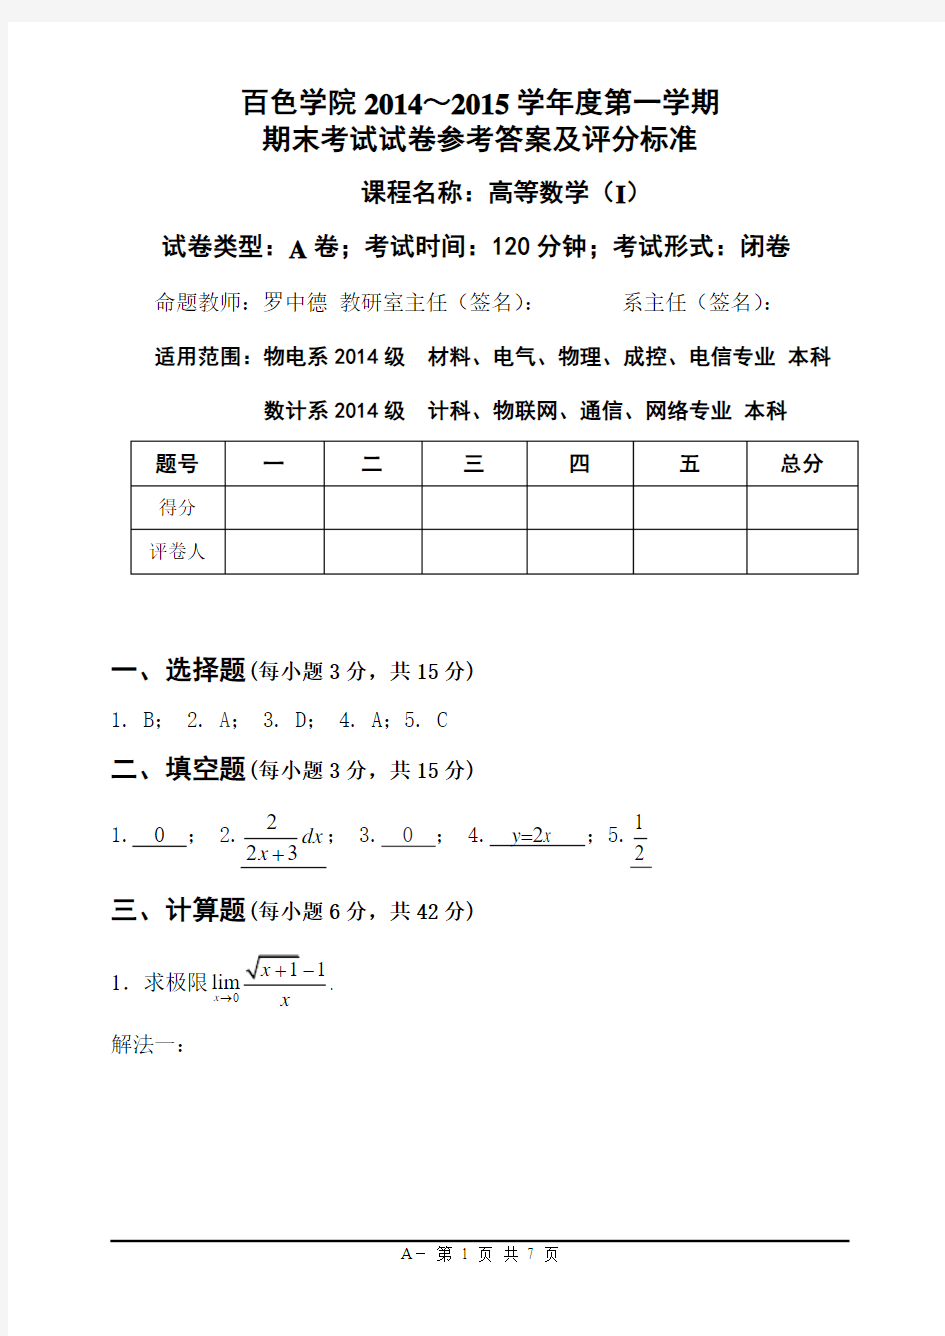 12.23 高等数学(I) A卷   2014-2015 上 参考答案及评分标准格式(16K)